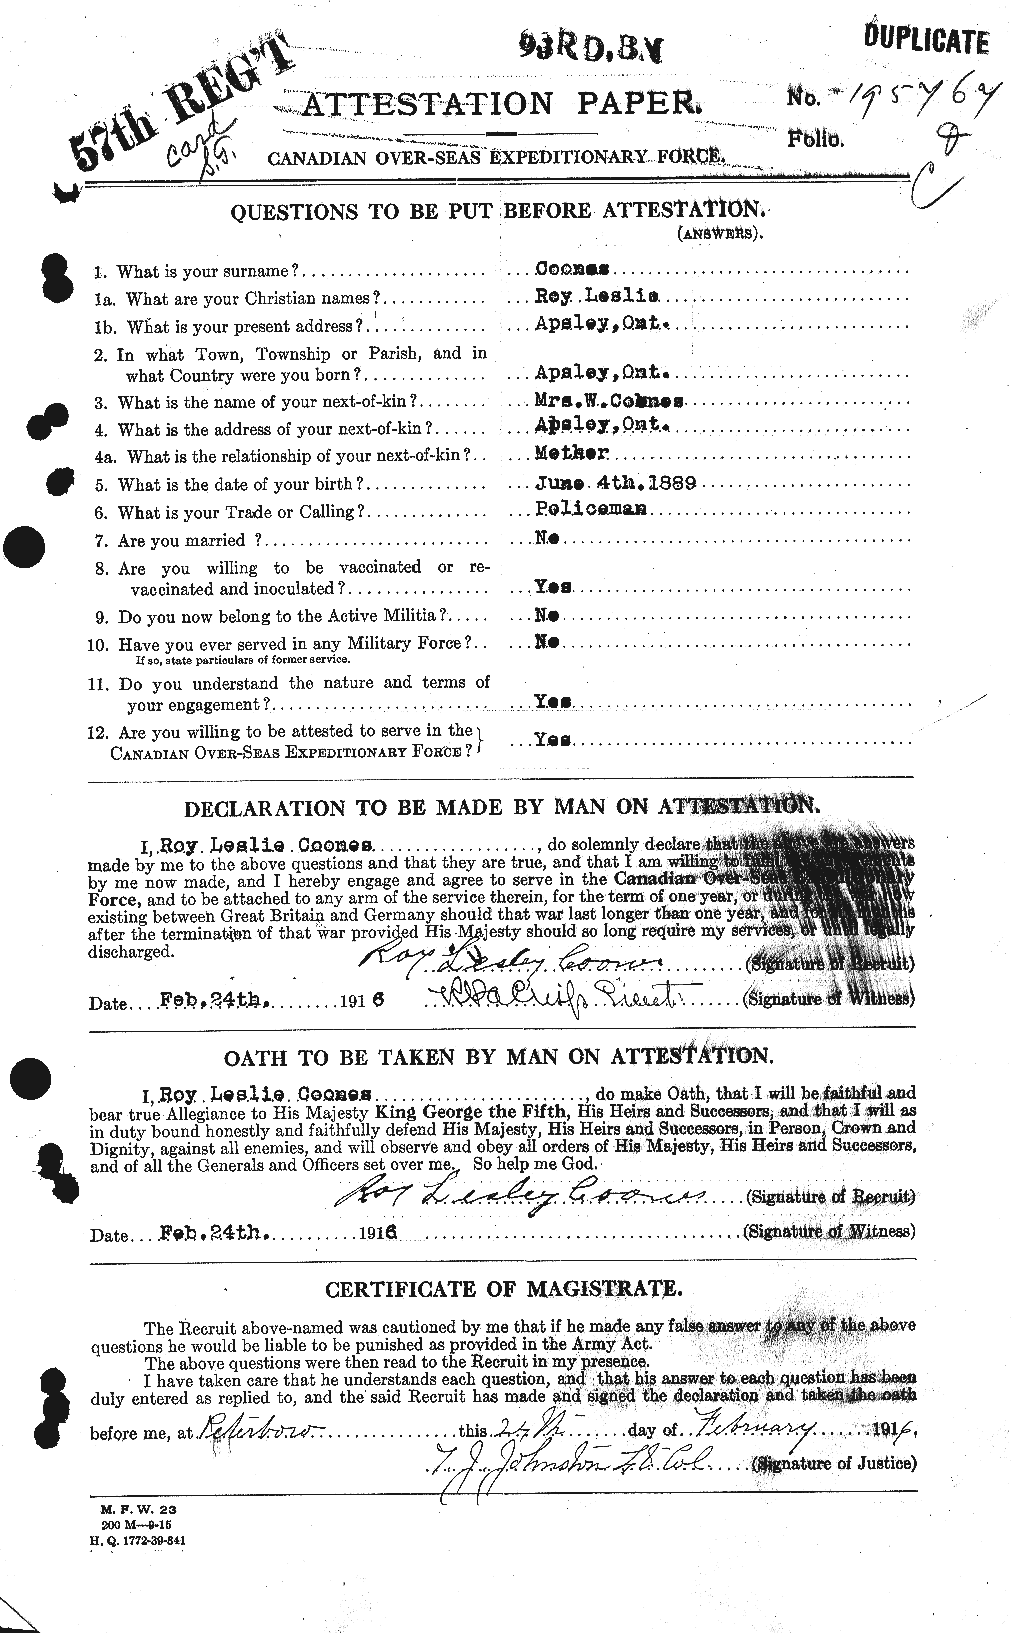 Dossiers du Personnel de la Première Guerre mondiale - CEC 055237a